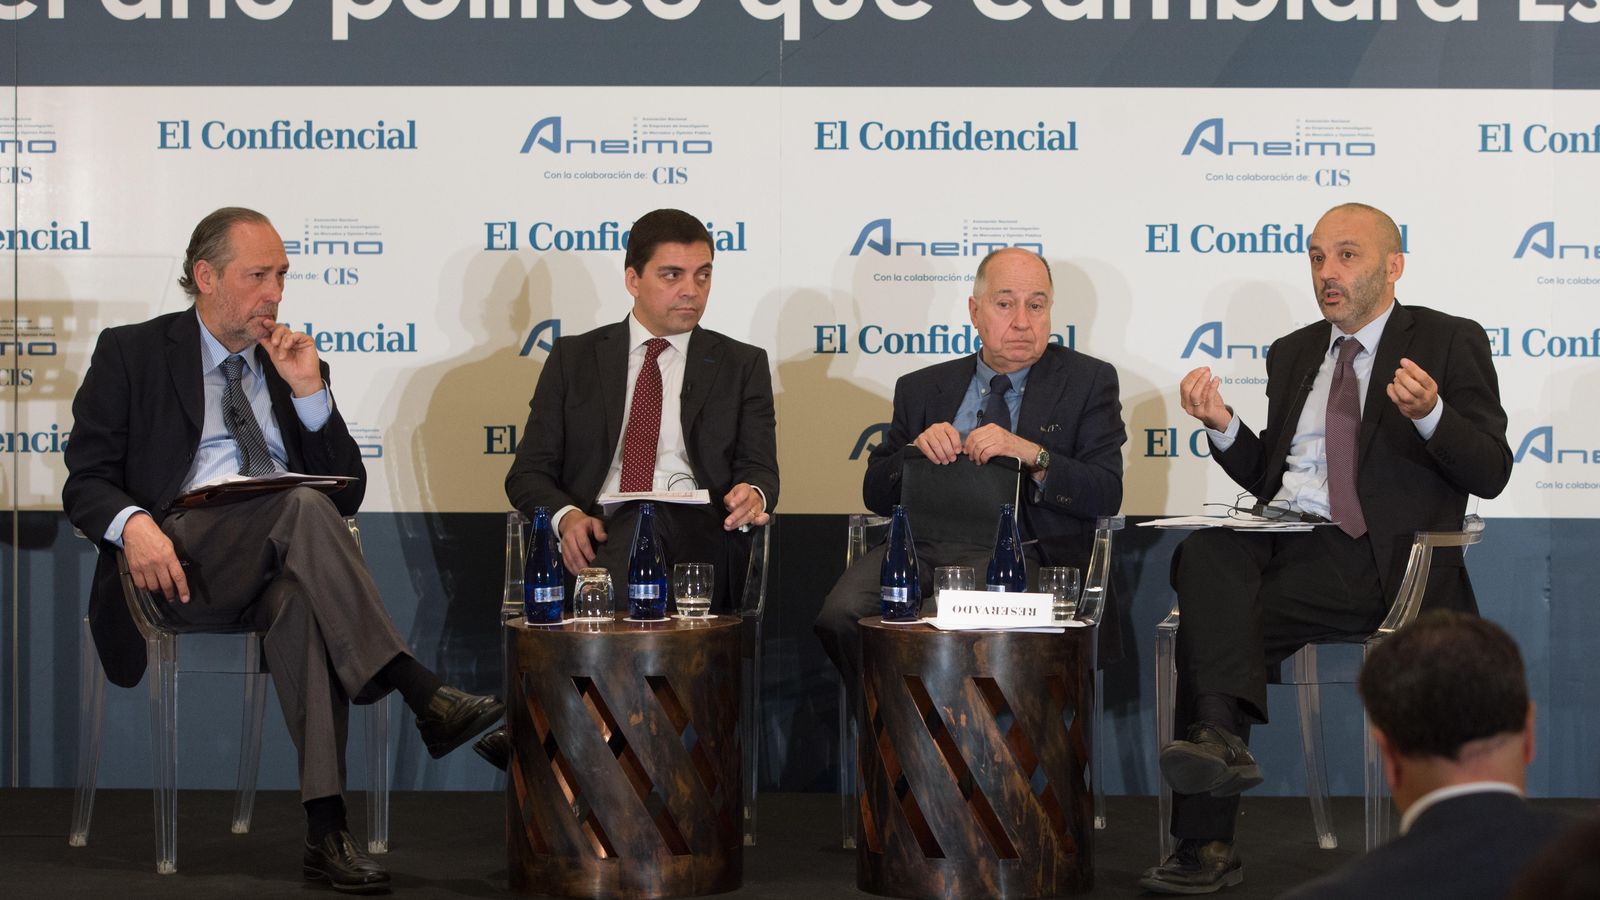 Foto: Jorge Clemente , Víctor Sobrino, José Juan Toharia y Luciano Miguel durante su intervención en el foro (Foto: Pablo López Learte)